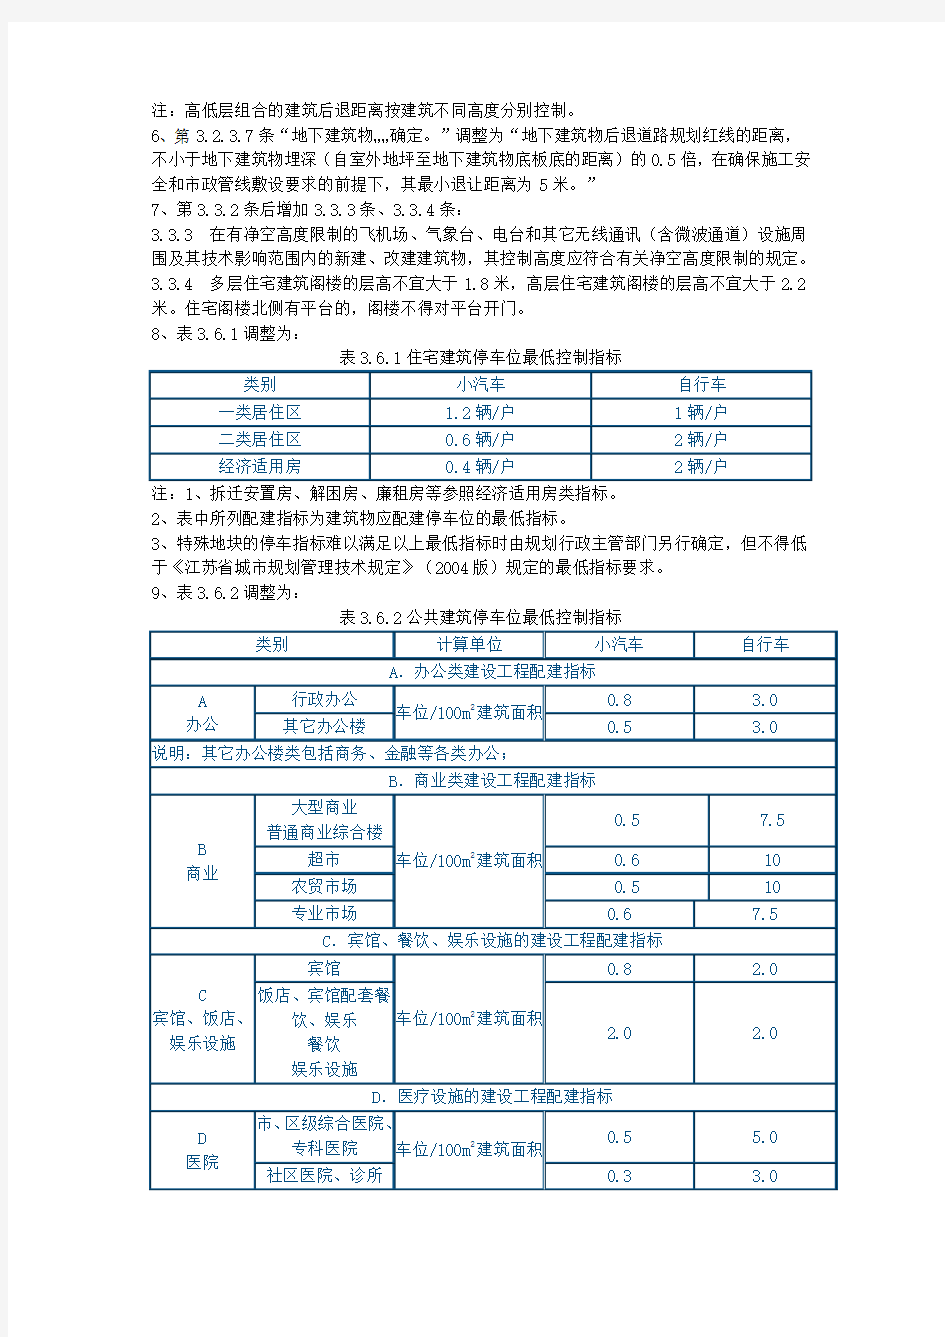 常州市关于《江苏省城市规划管理技术规定》(2004年版)实施的补充规定